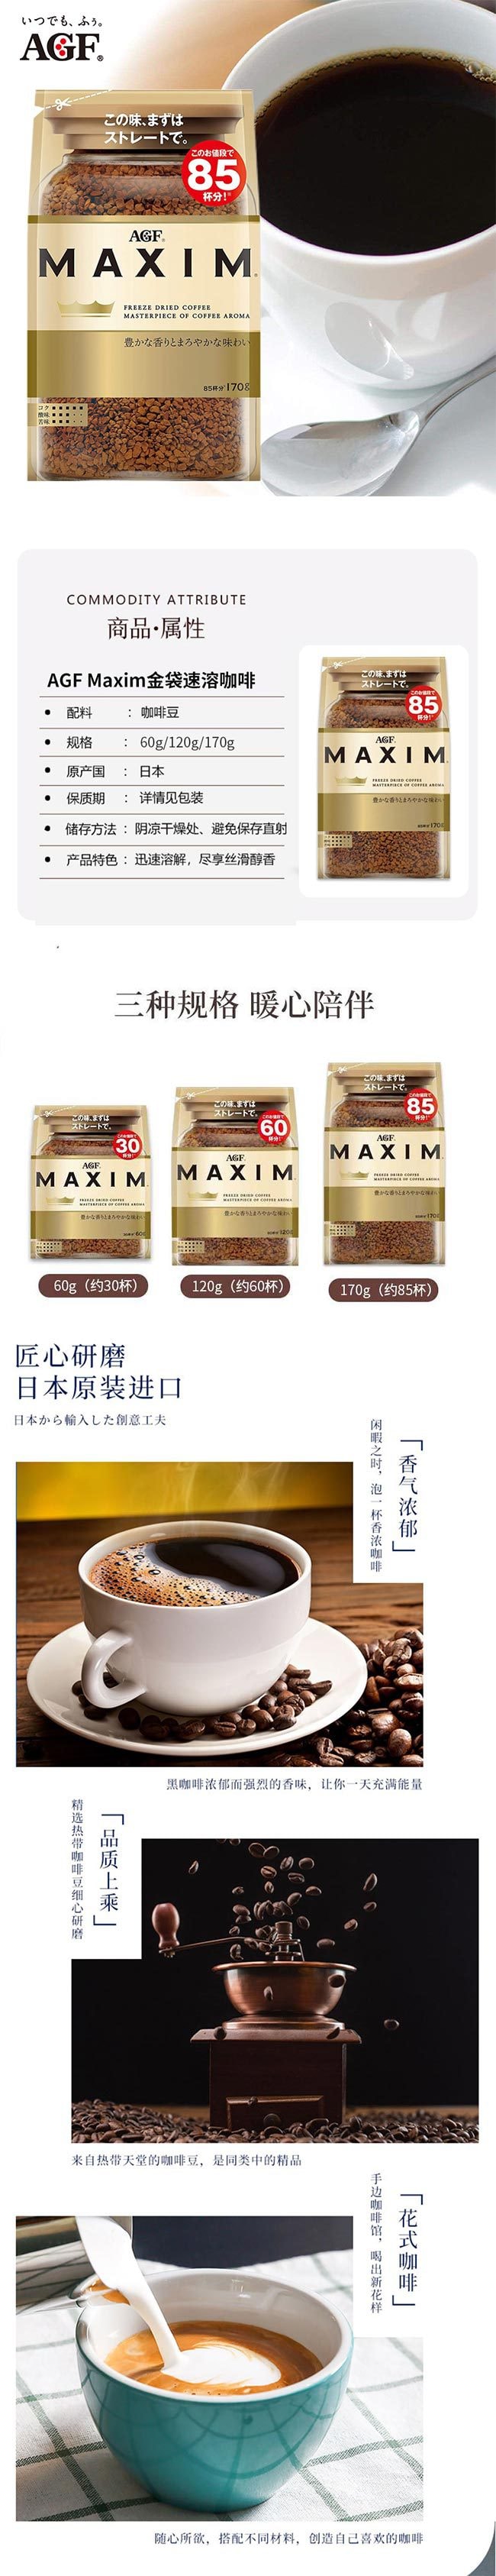 【日本直邮】AGF Maxim美式冻干黑咖啡速溶咖啡 袋装 60g